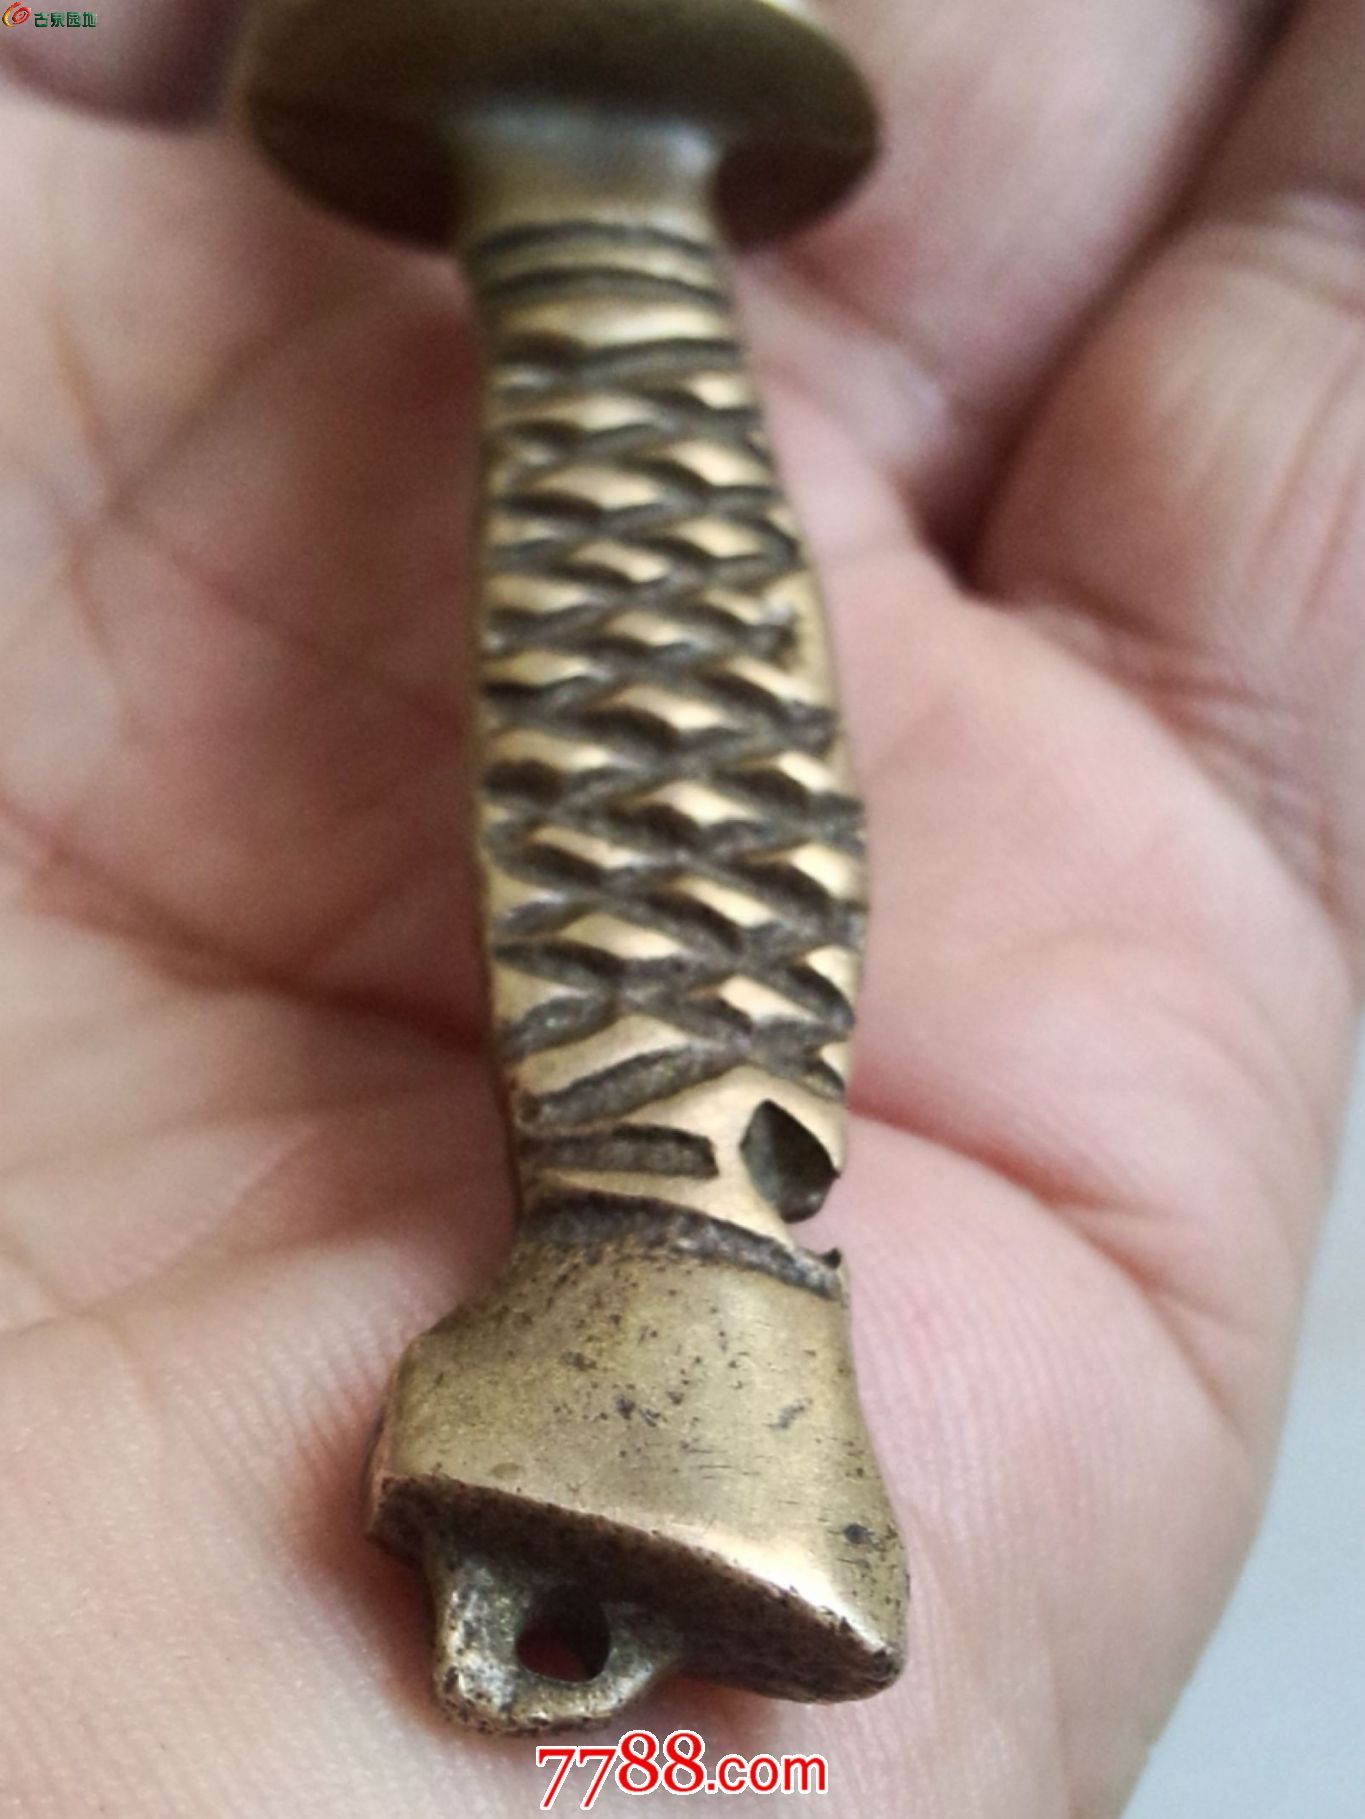 民国时期小铜刀